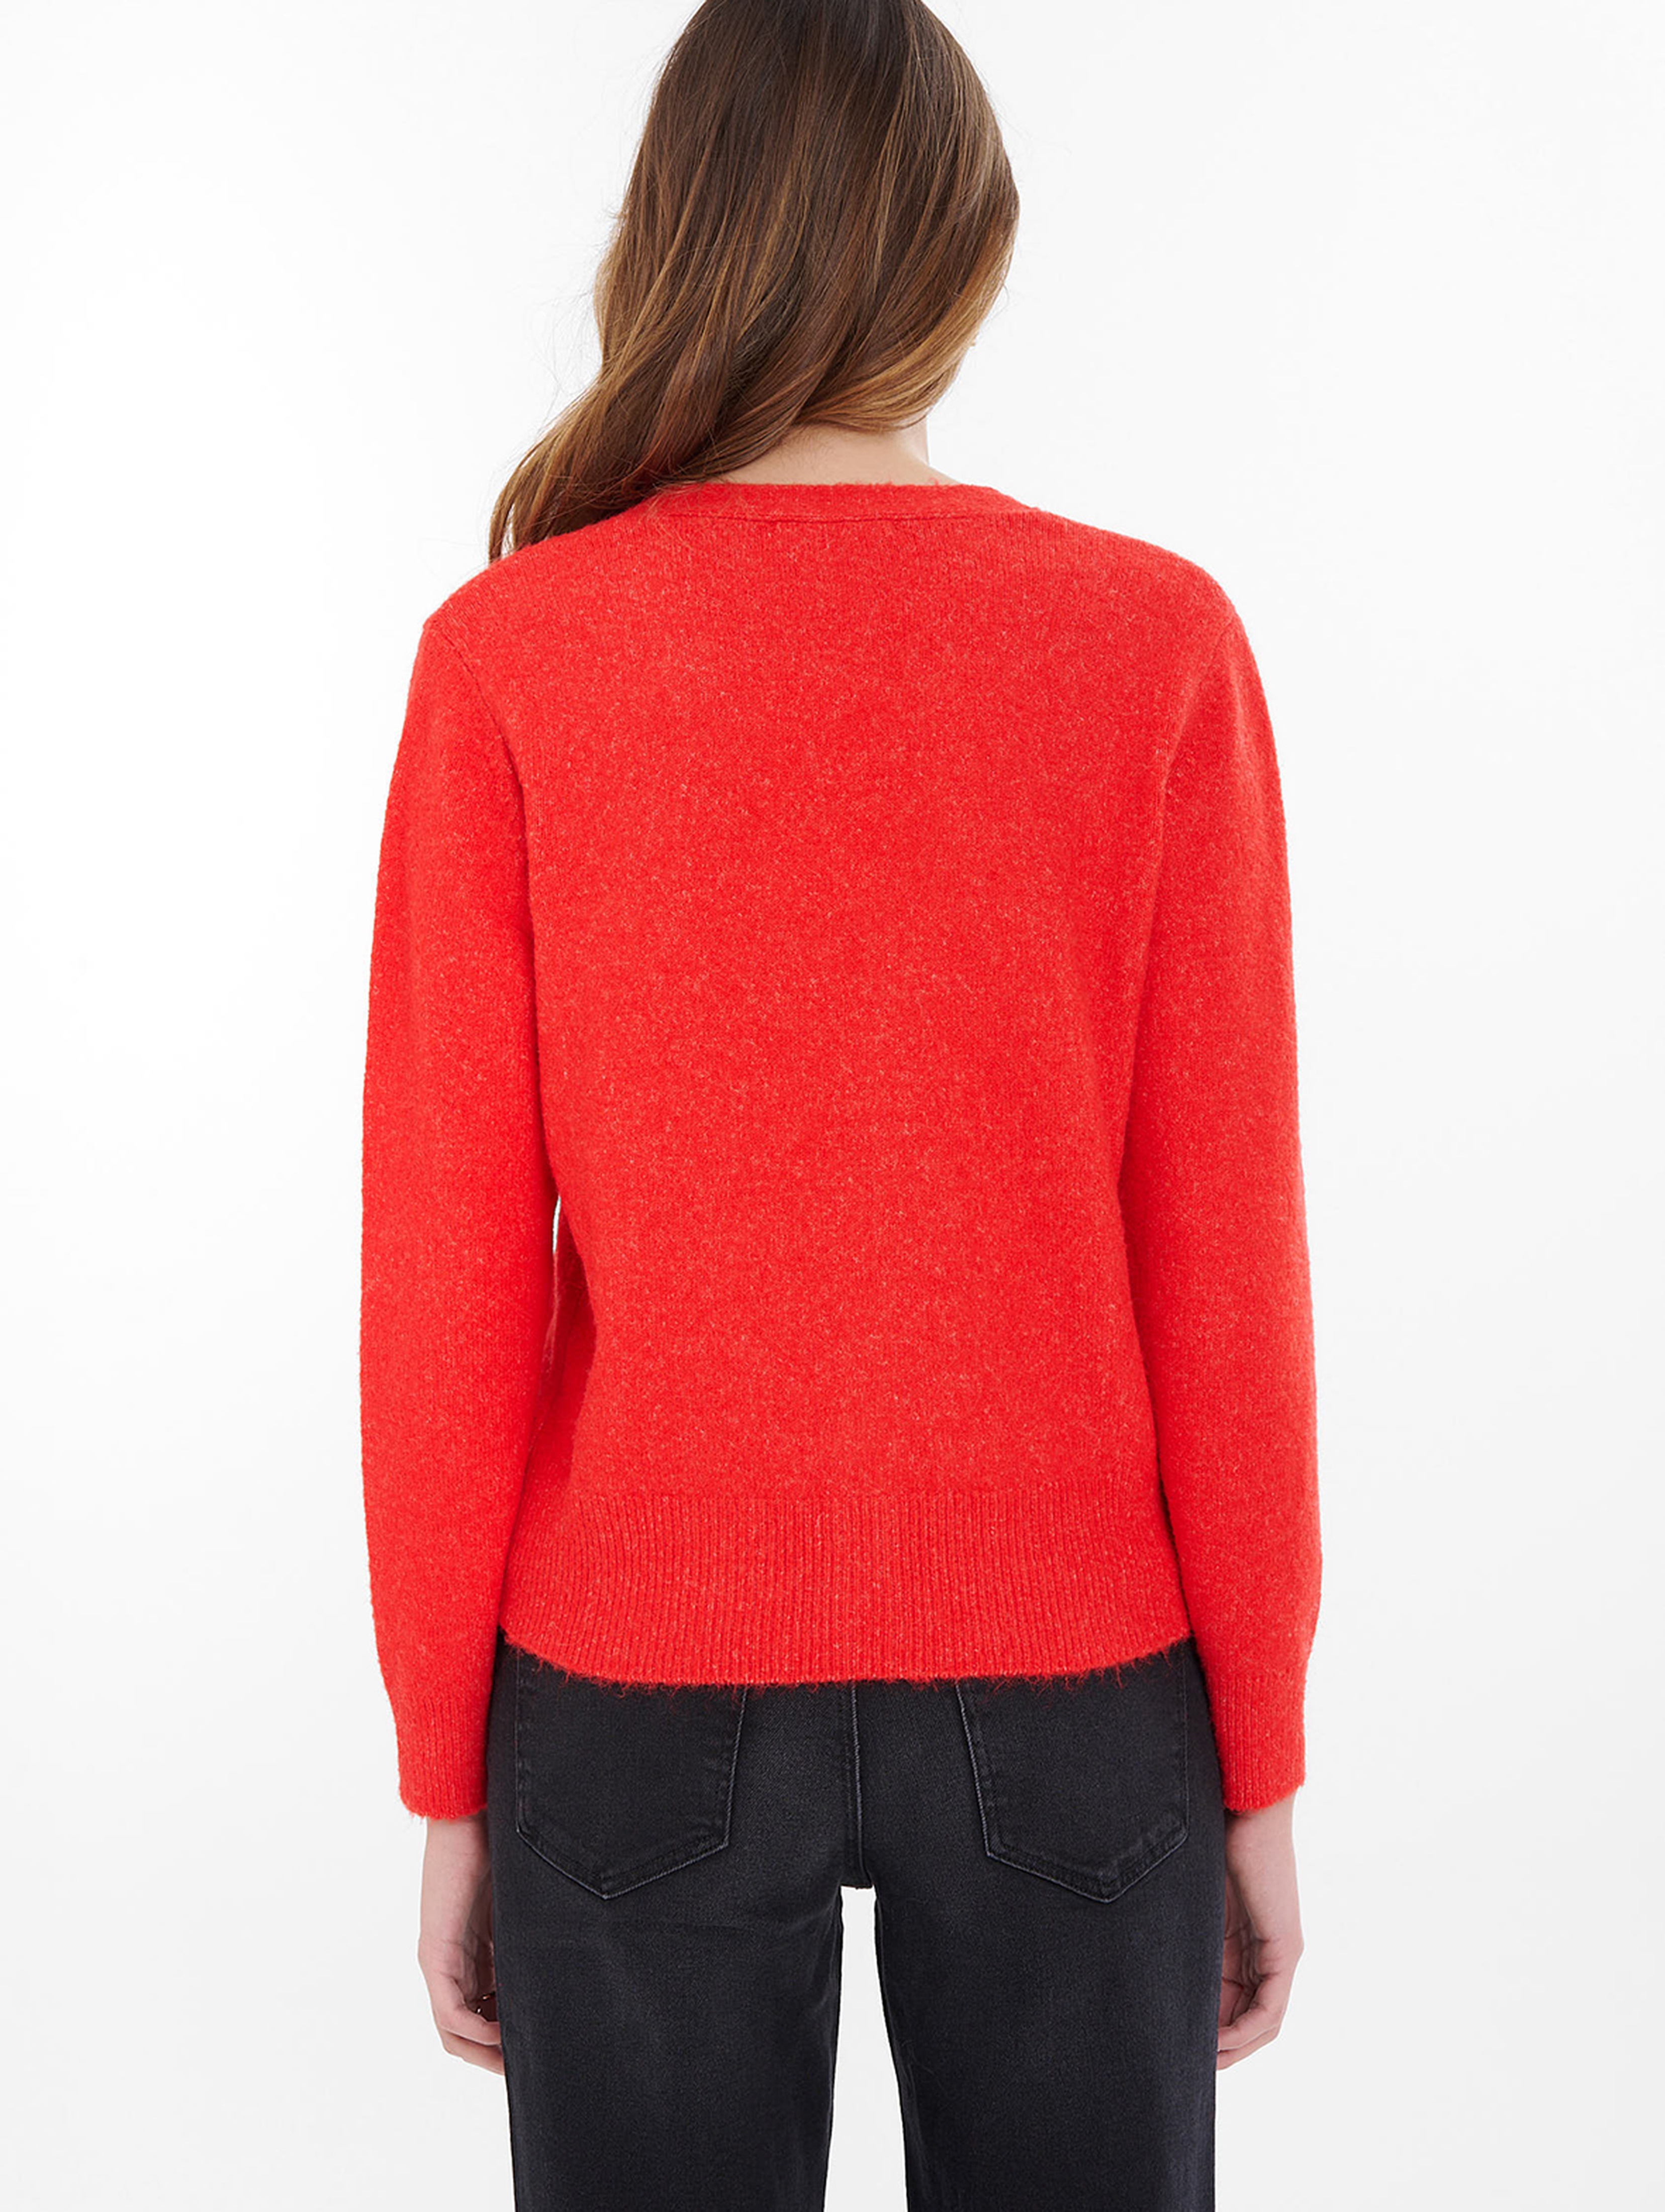 Sweter rozpinany damski czerwony